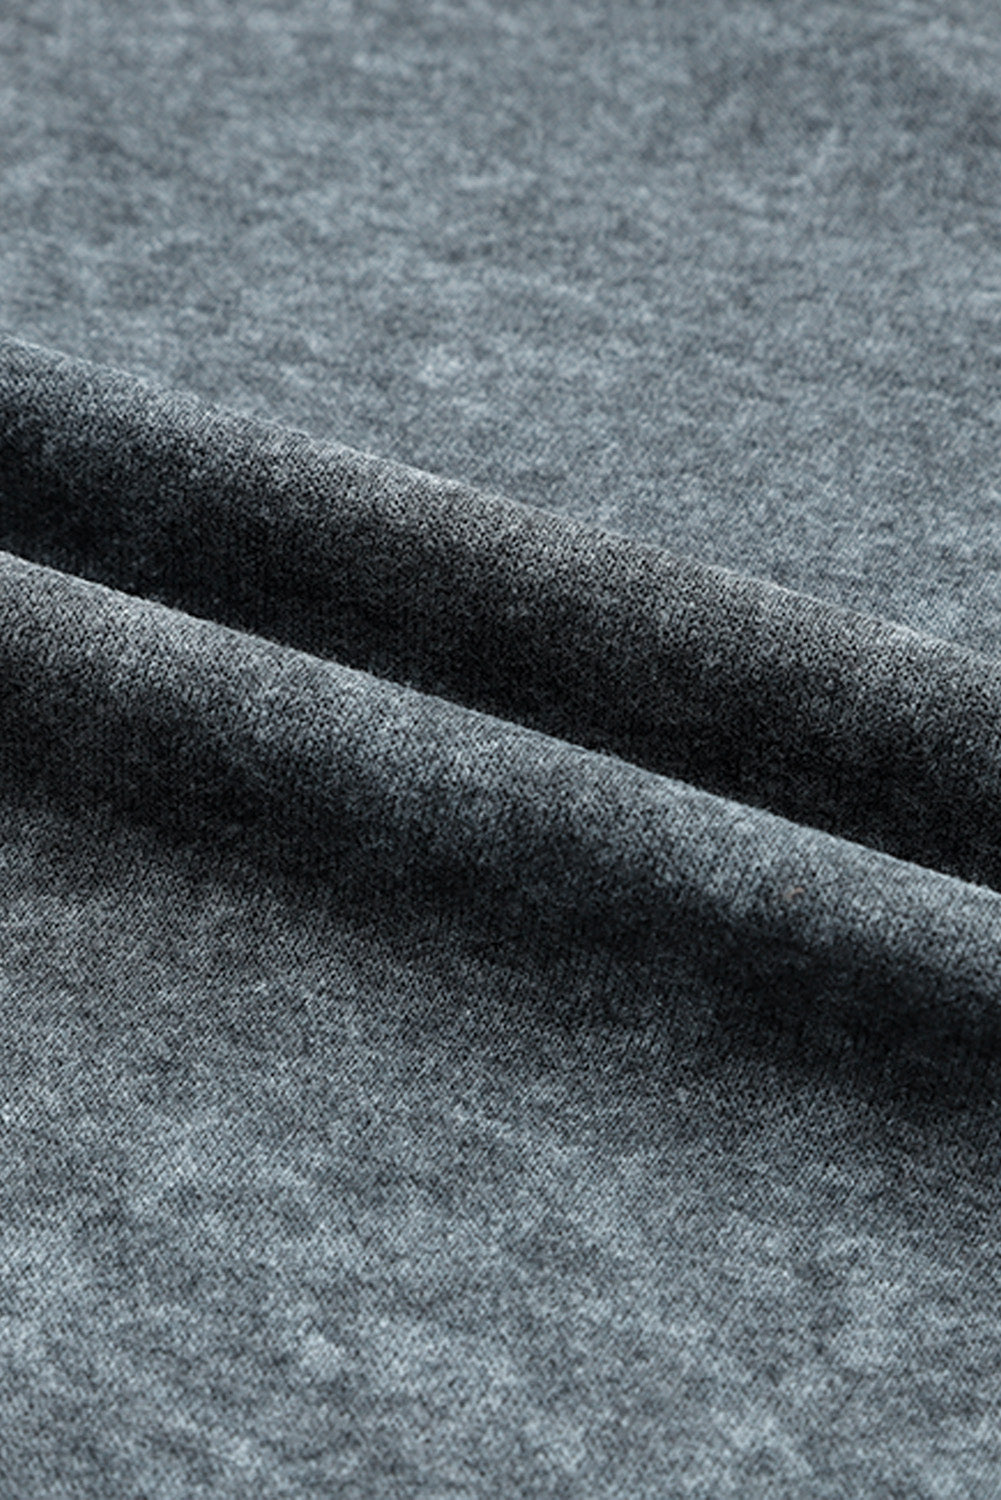 Pulover s šivi in ​​razporki sproščenega kroja v sivi barvi Acid Wash